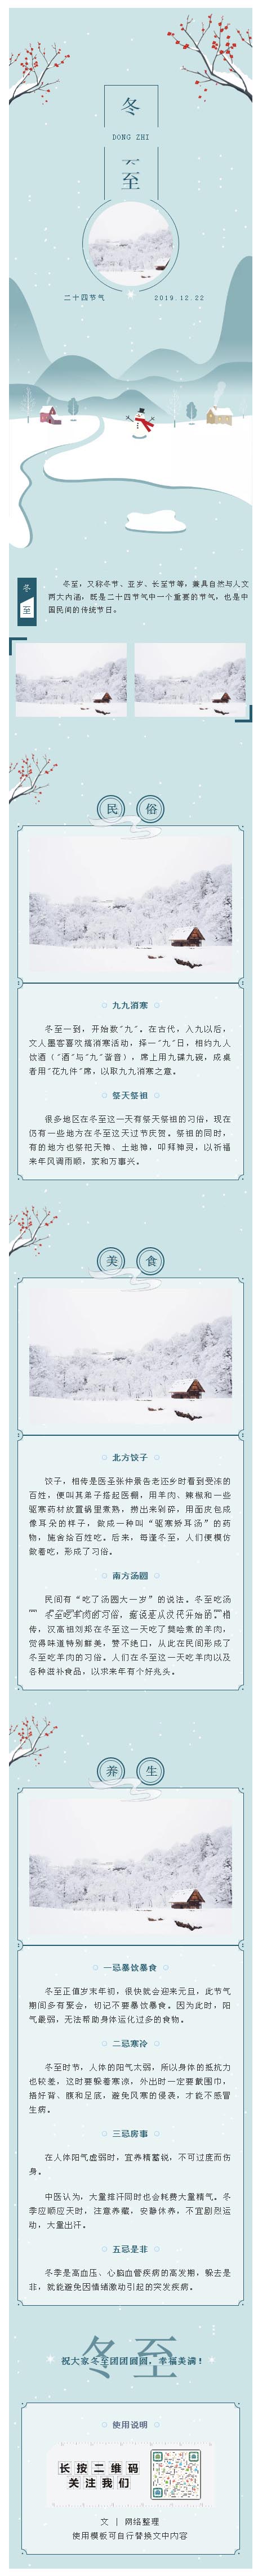 微信模板冬至大小寒二十四节气中国传统节日推送图文素材模板